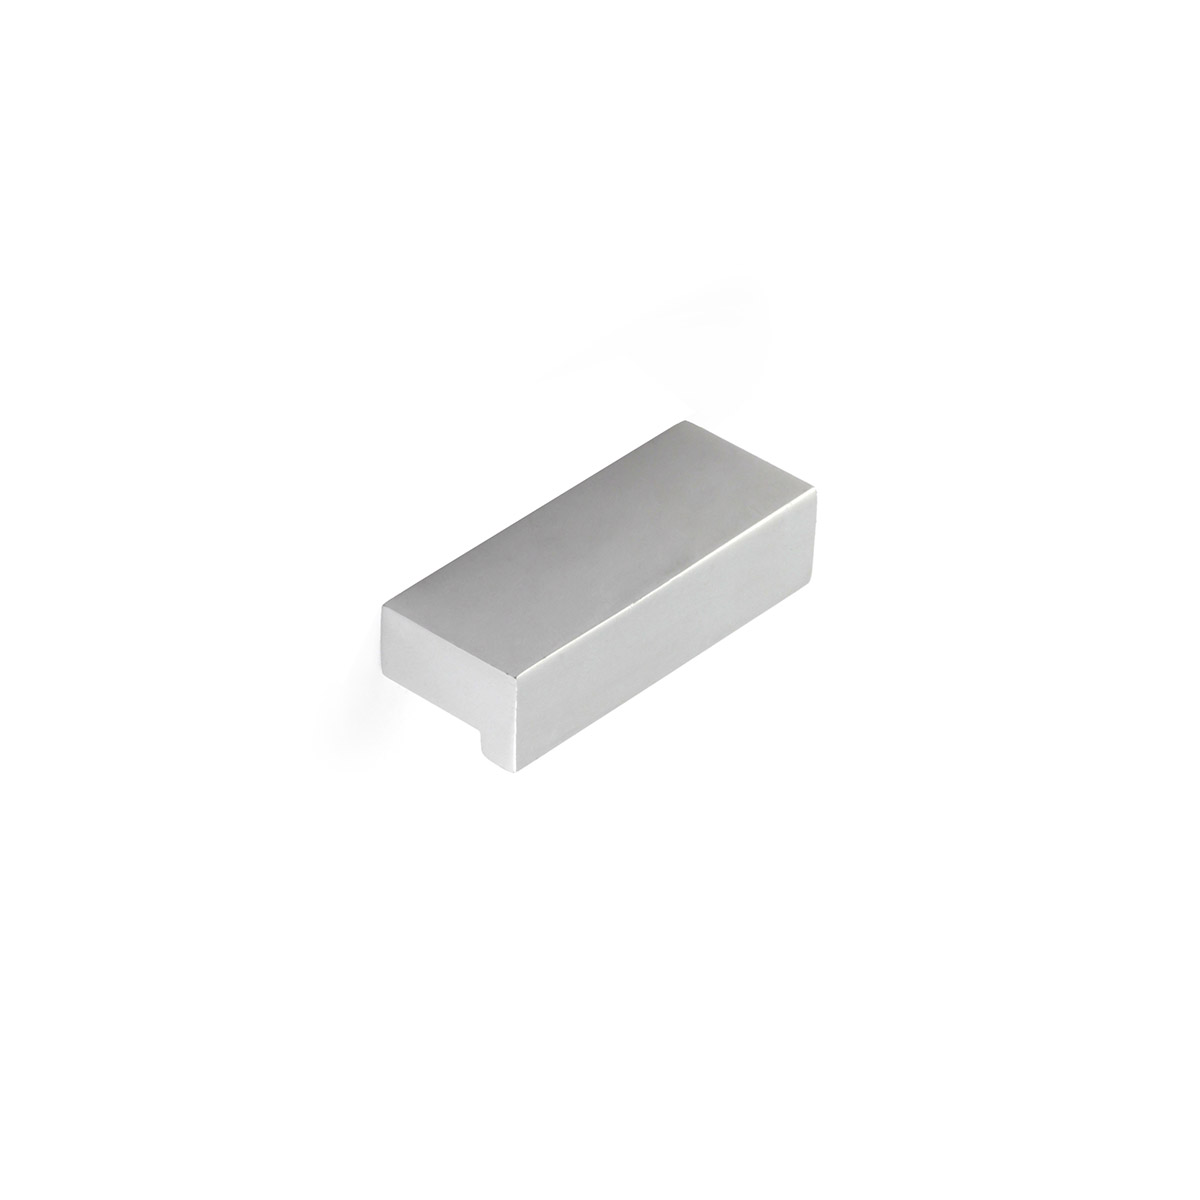 Poignée en aluminium avec finition anodisée mat, dimensions: 44x12x18mm ADHESIVE